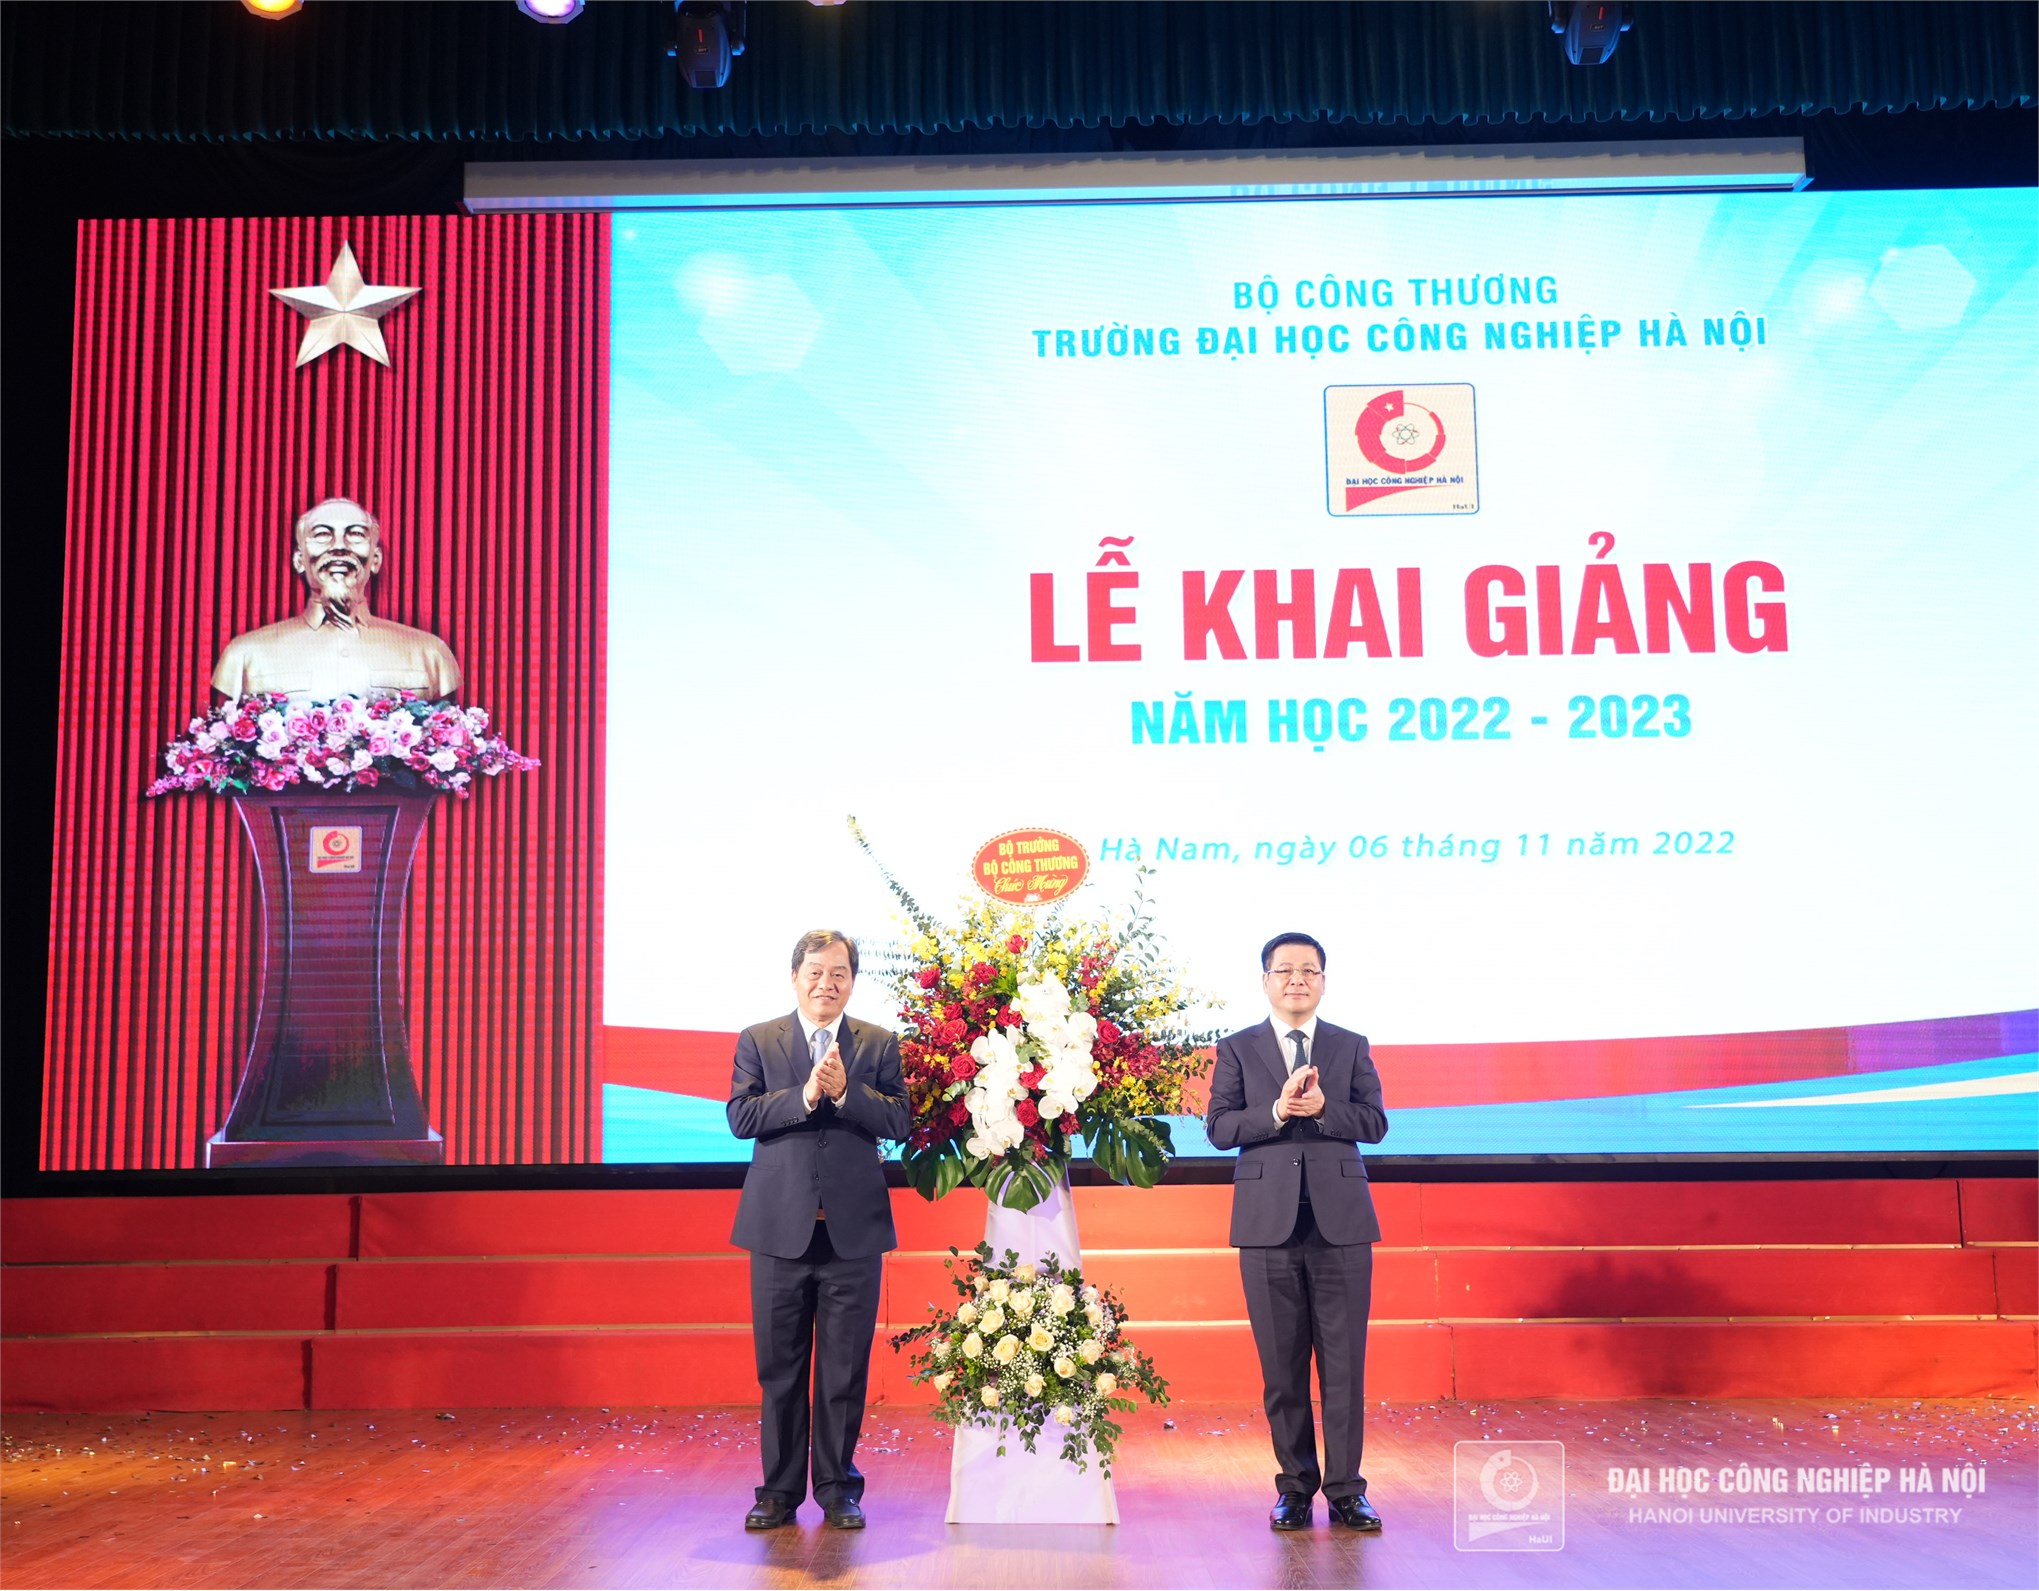 Đại học Công nghiệp Hà Nội khai giảng năm học 2022 - 2023